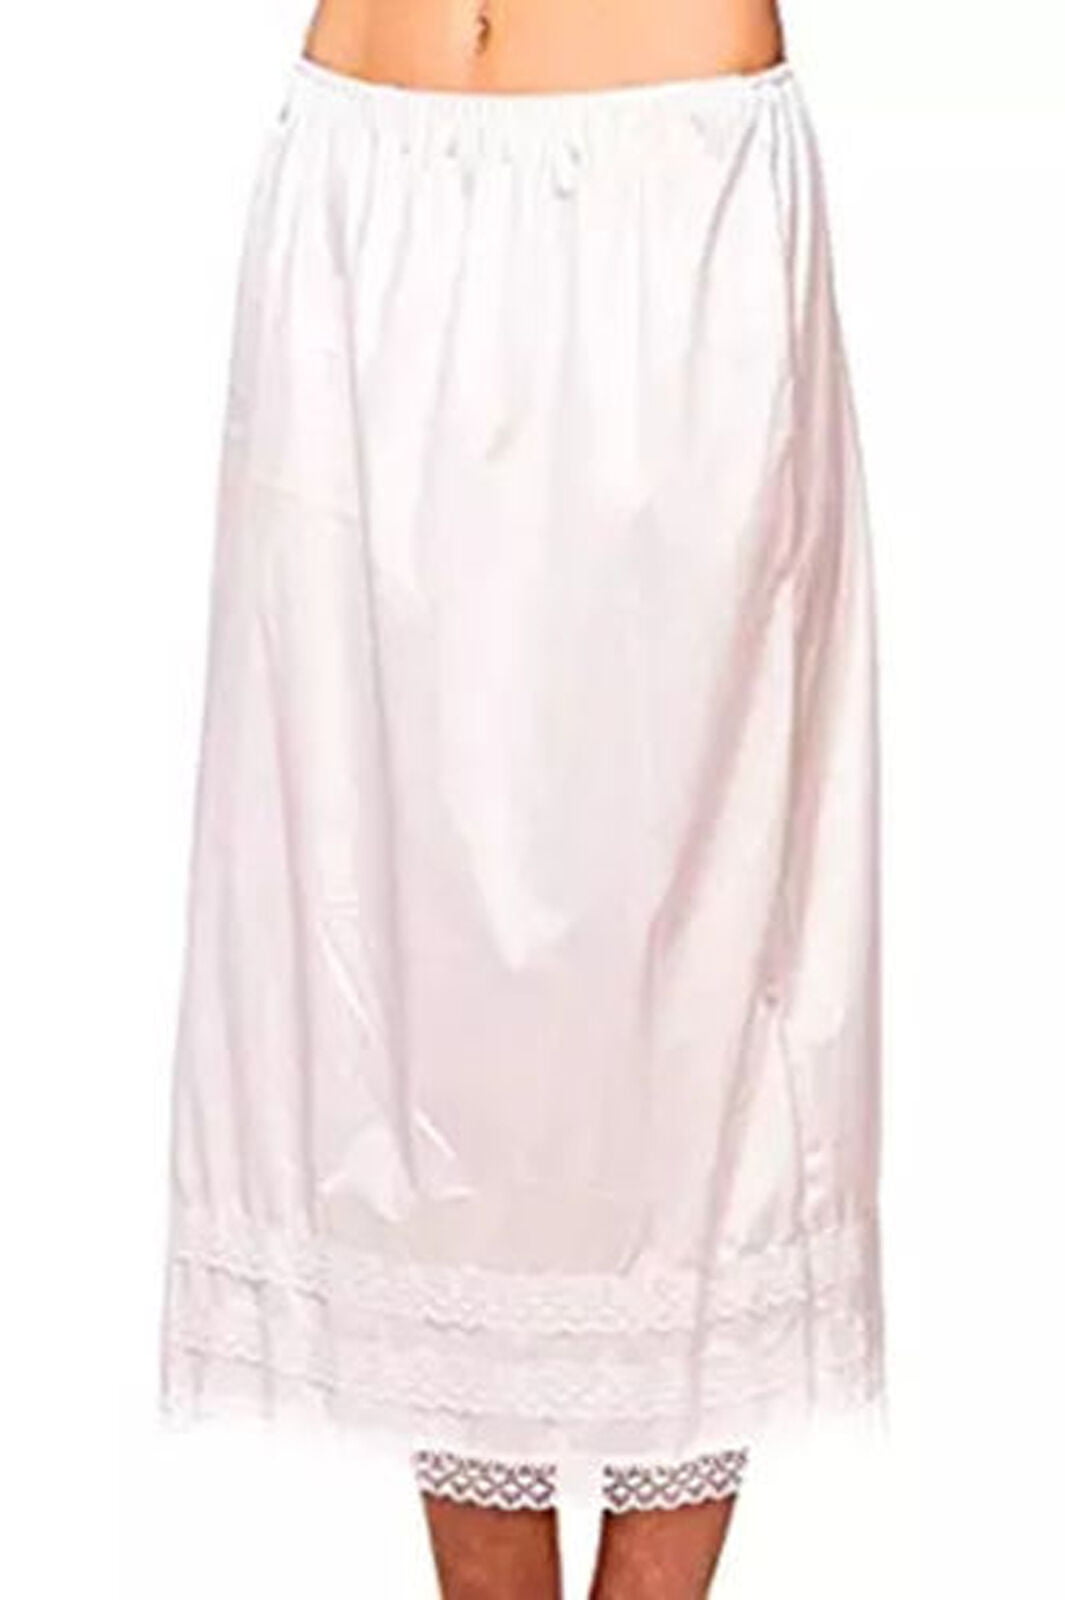 Women Waist Slip Lady Black White Underskirt Petticoat Half Slips 23-39" Hot 